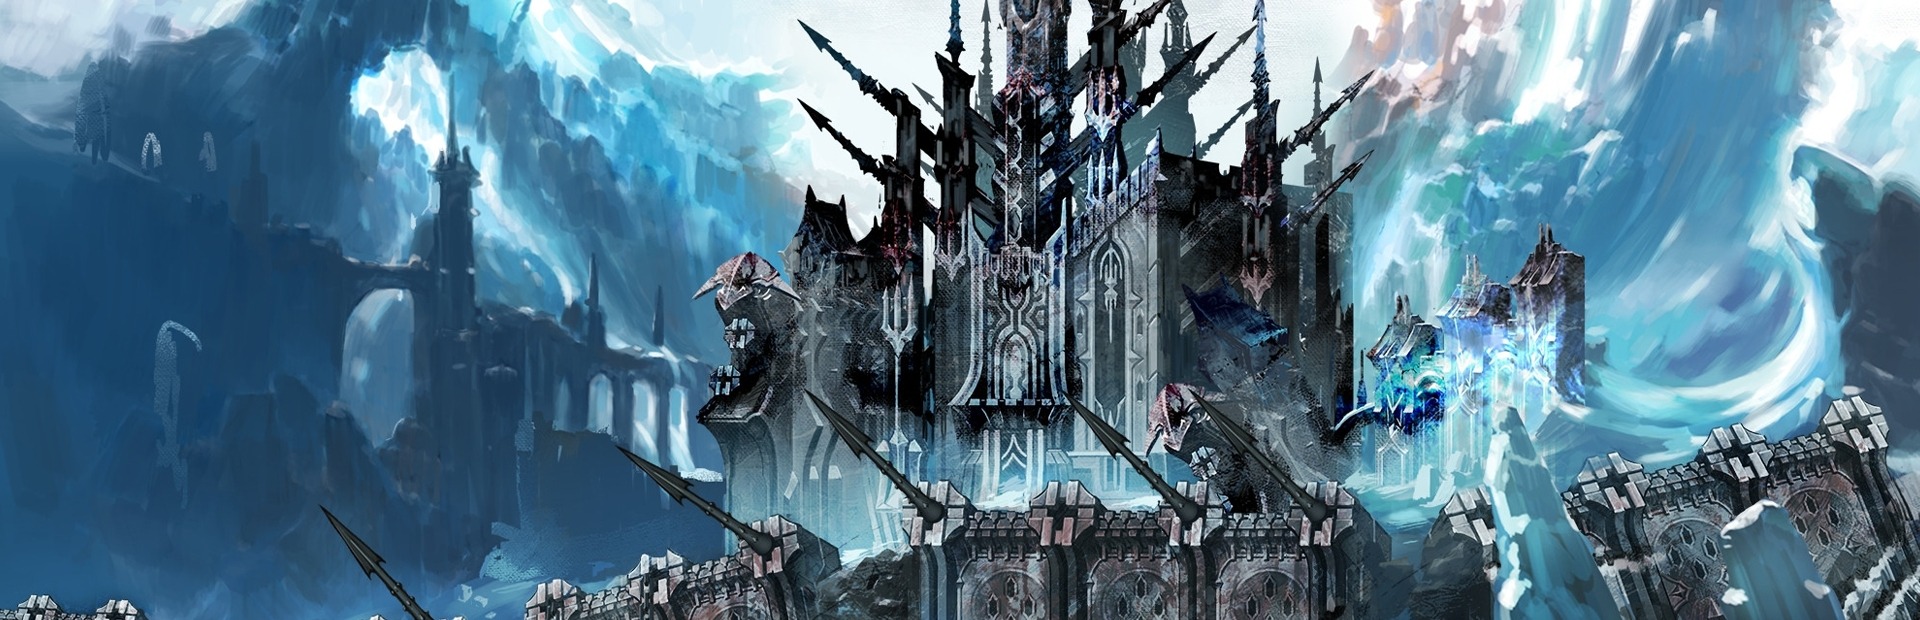 Final Fantasy XIV: A Realm Reborn + Heavensward